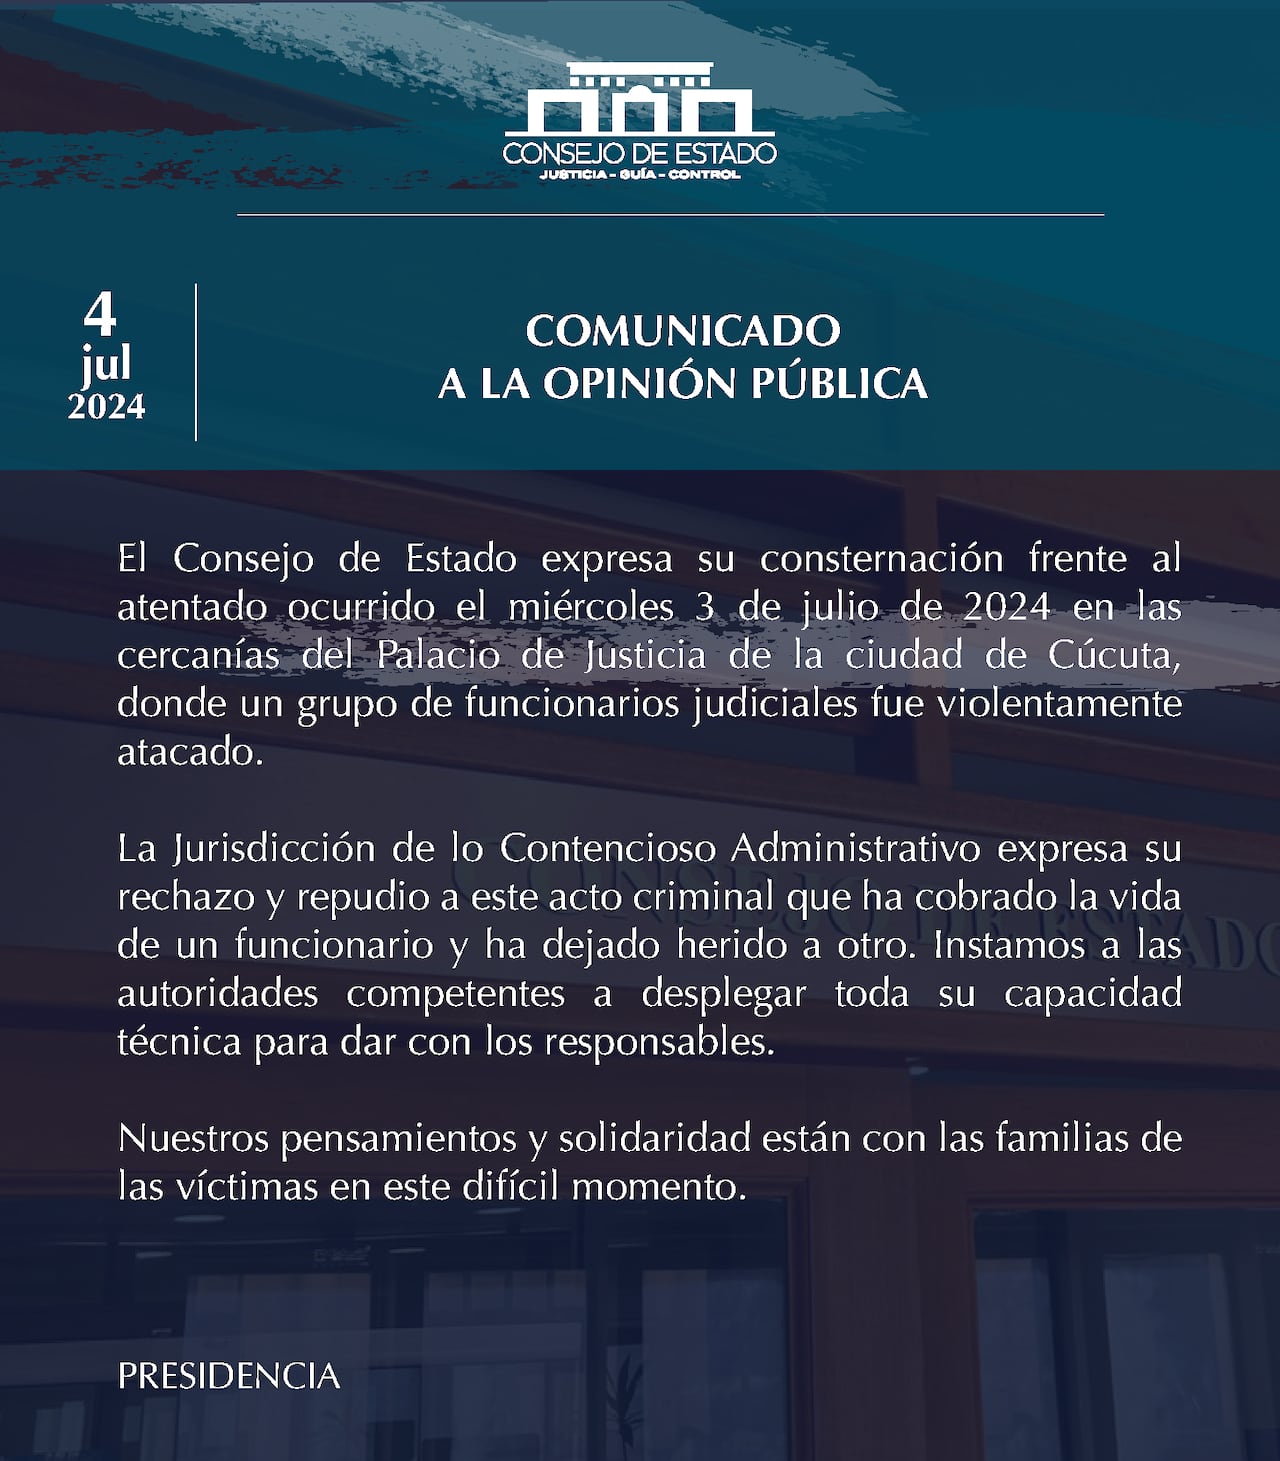 Comunicado del Consejo de Estado rechazando el asesinato en Cúcuta.